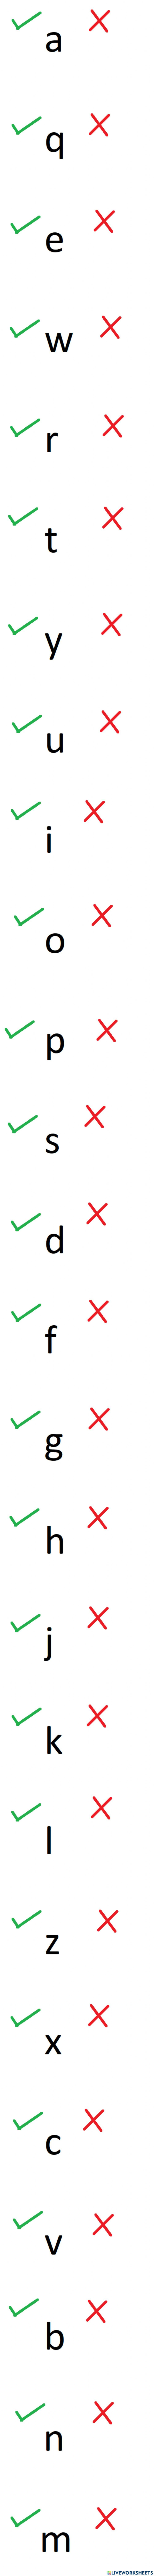 Lower Case Alphabet letters